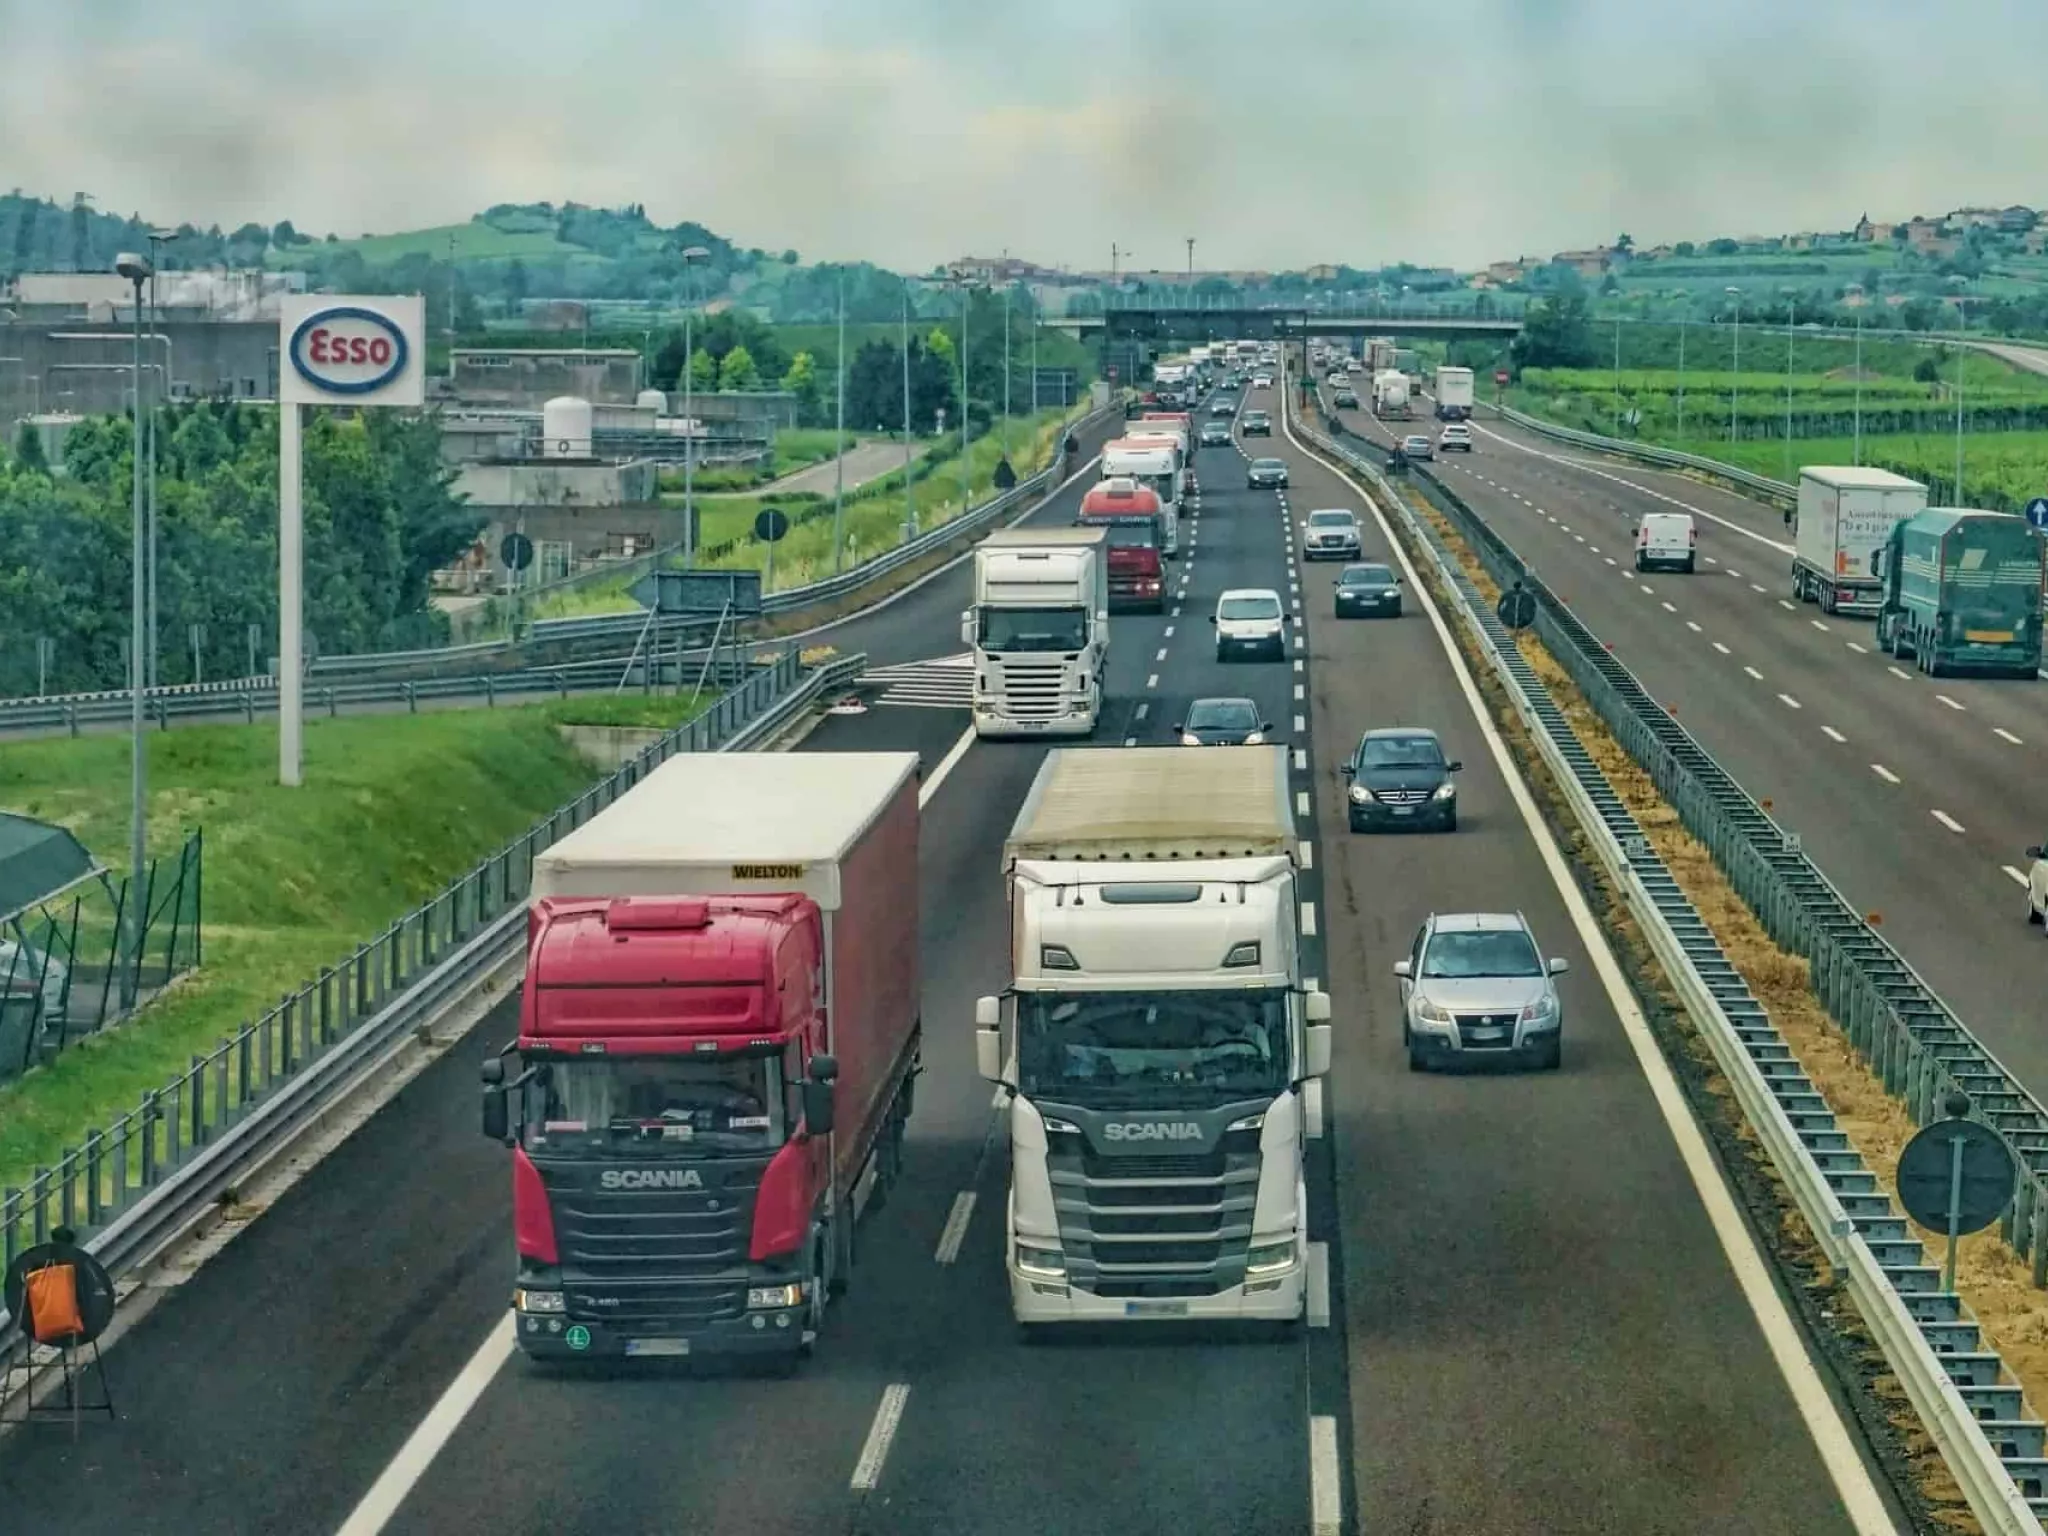 camions sur une autoroute allemande